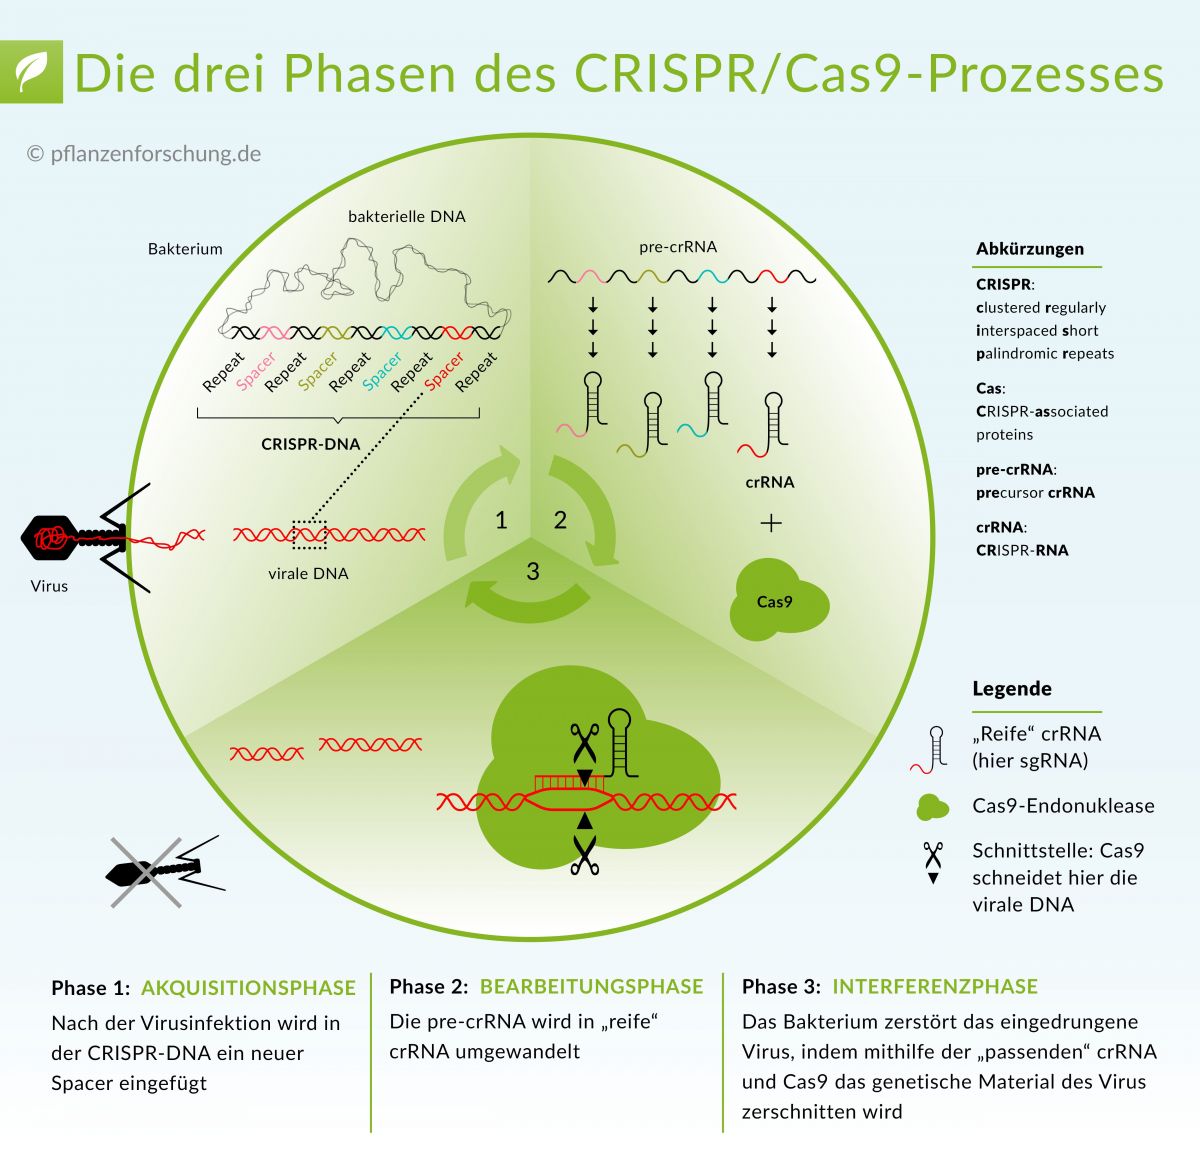 Die Funktionsweise des Typ II CRISPR/Cas-Systems. Der Ablauf des Prozesses erfolgt in drei Phasen: Akquisition eines neuen Distanzstückes, Bearbeitung der pre-crRNA in cr-RNA, Abbau der viralen DNA.